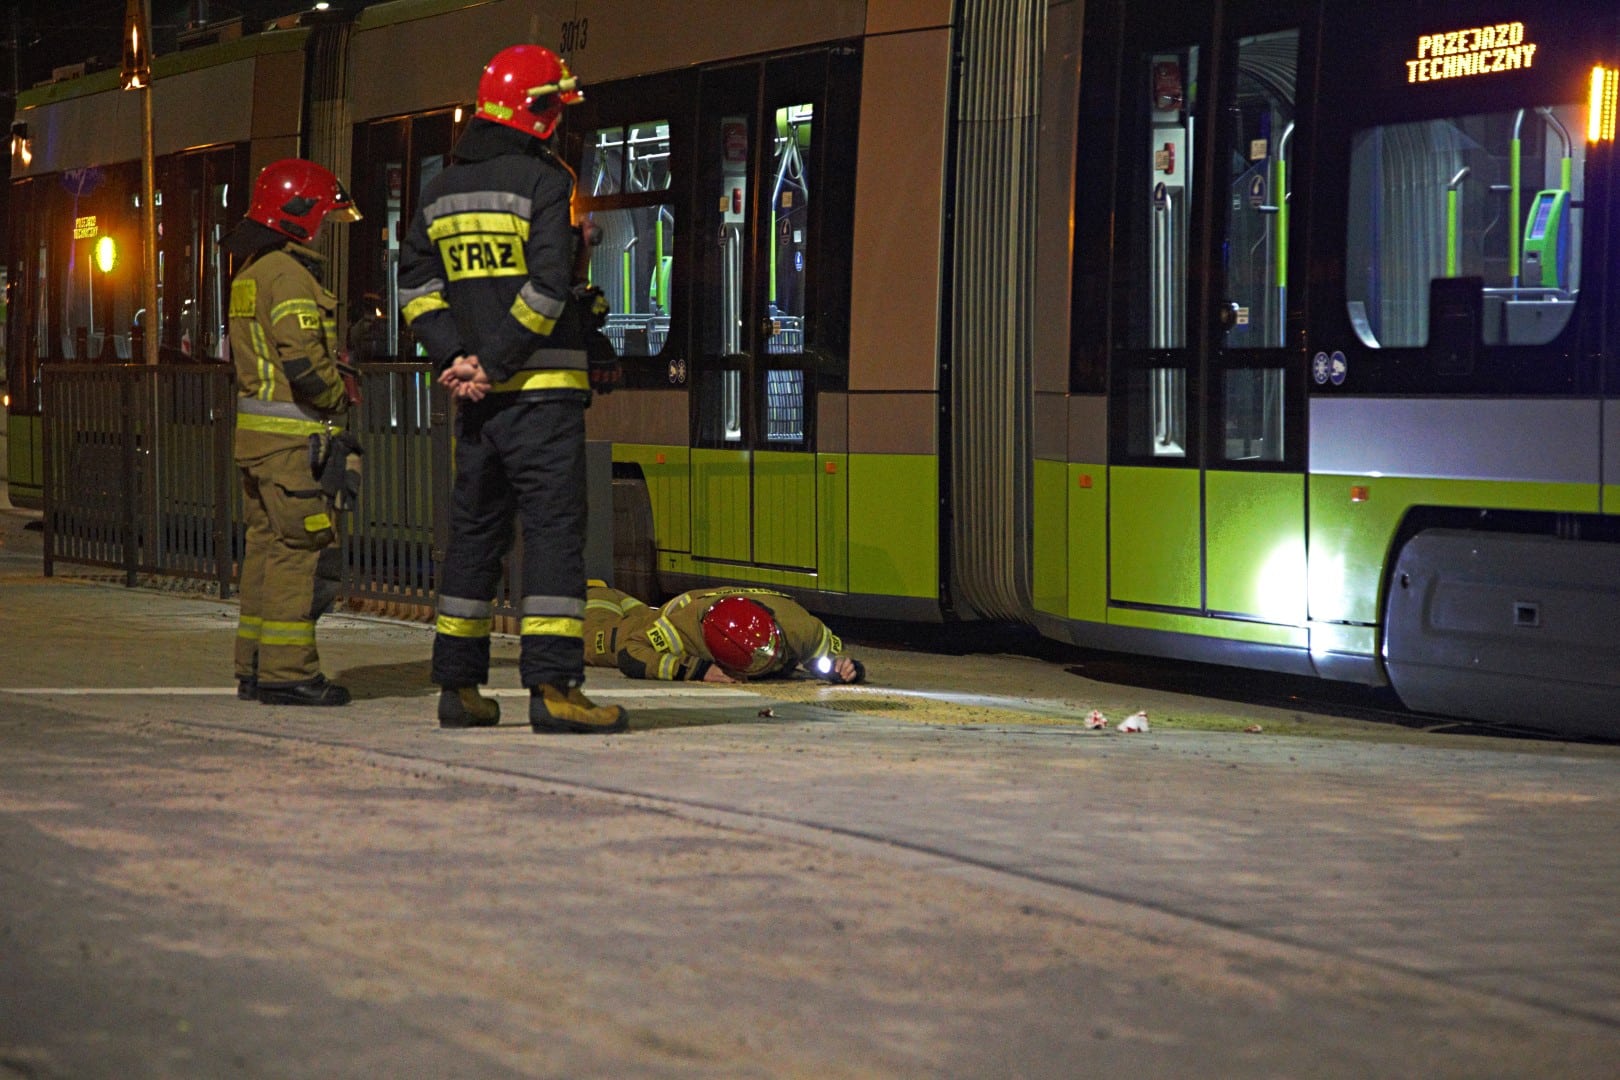 Motorniczy prowadzący tramwaj potrącił pieszego w Olsztynie. Pierwszy wypadek na nowej trasie wypadek Olsztyn, Wiadomości, zShowcase